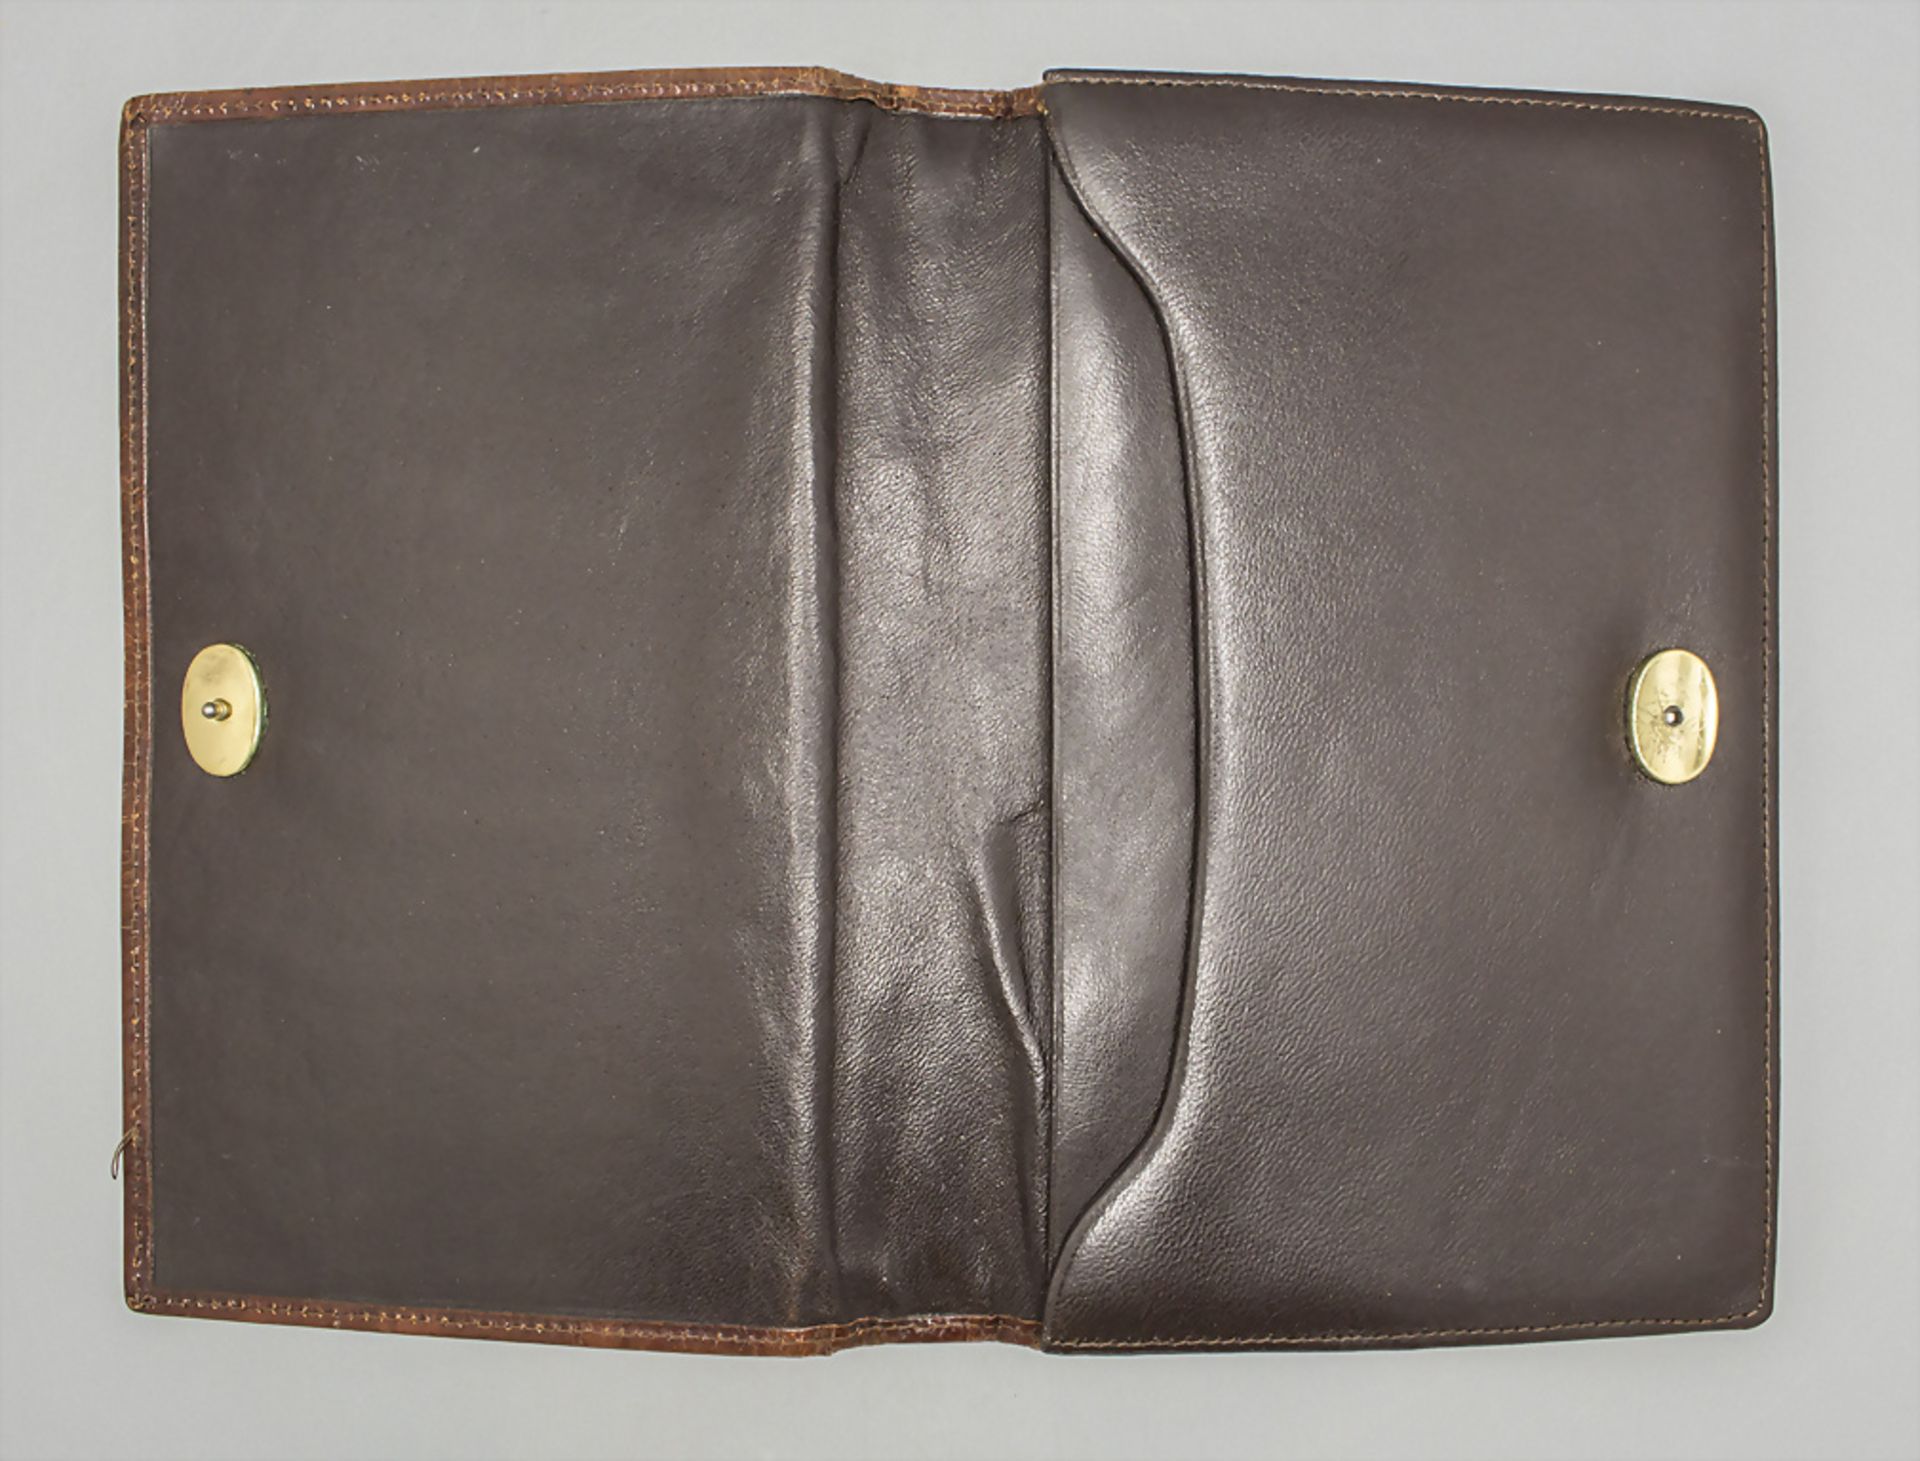 Gemusterte Lederhandtasche / A patterned leather handbag, wohl Italien - Image 4 of 5